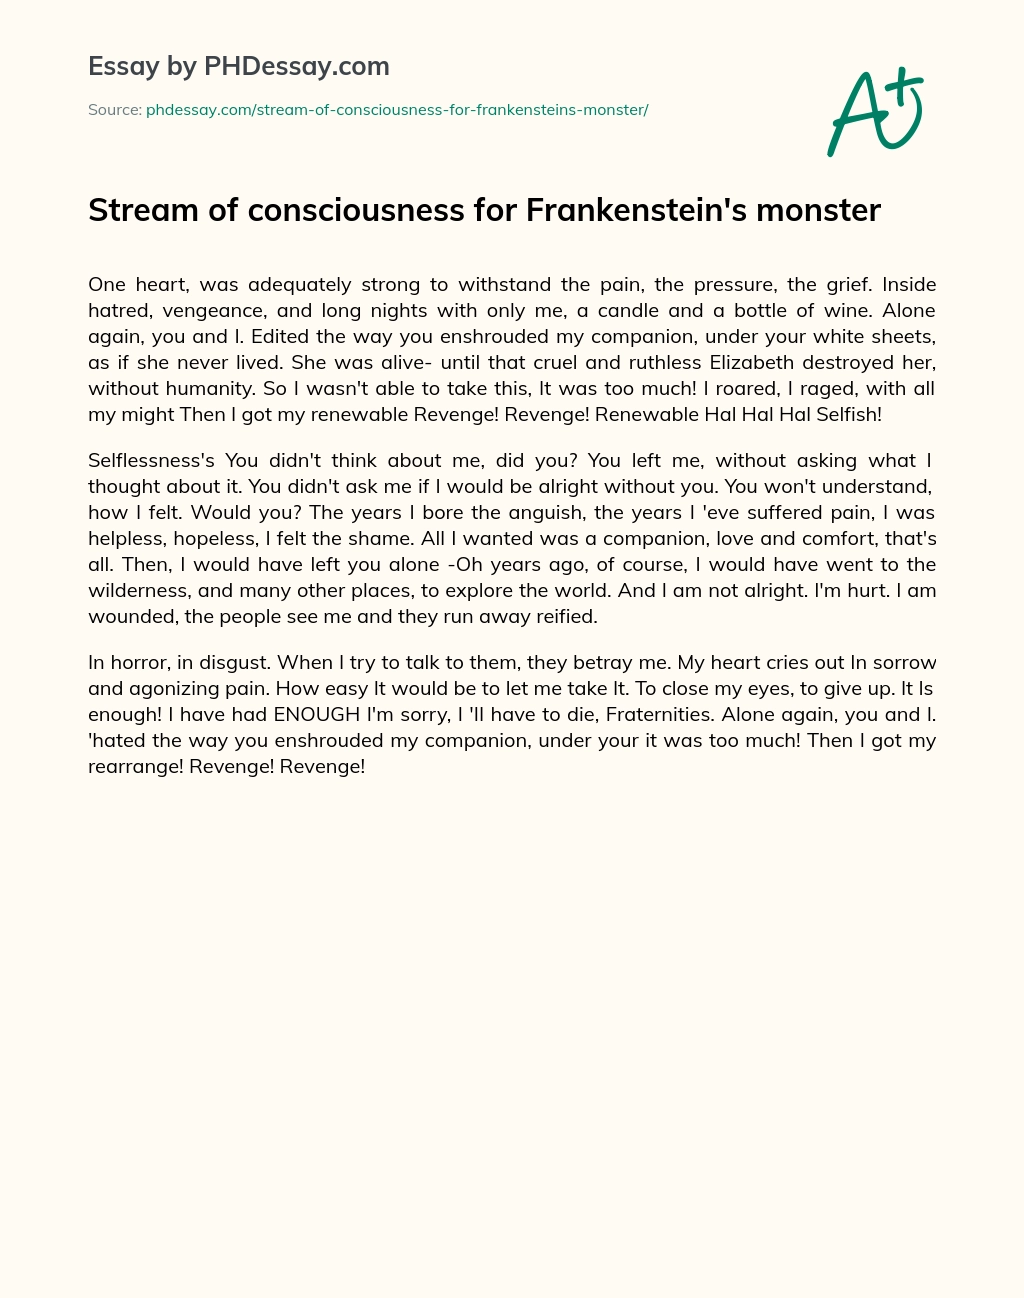 Stream of consciousness for Frankenstein’s monster essay